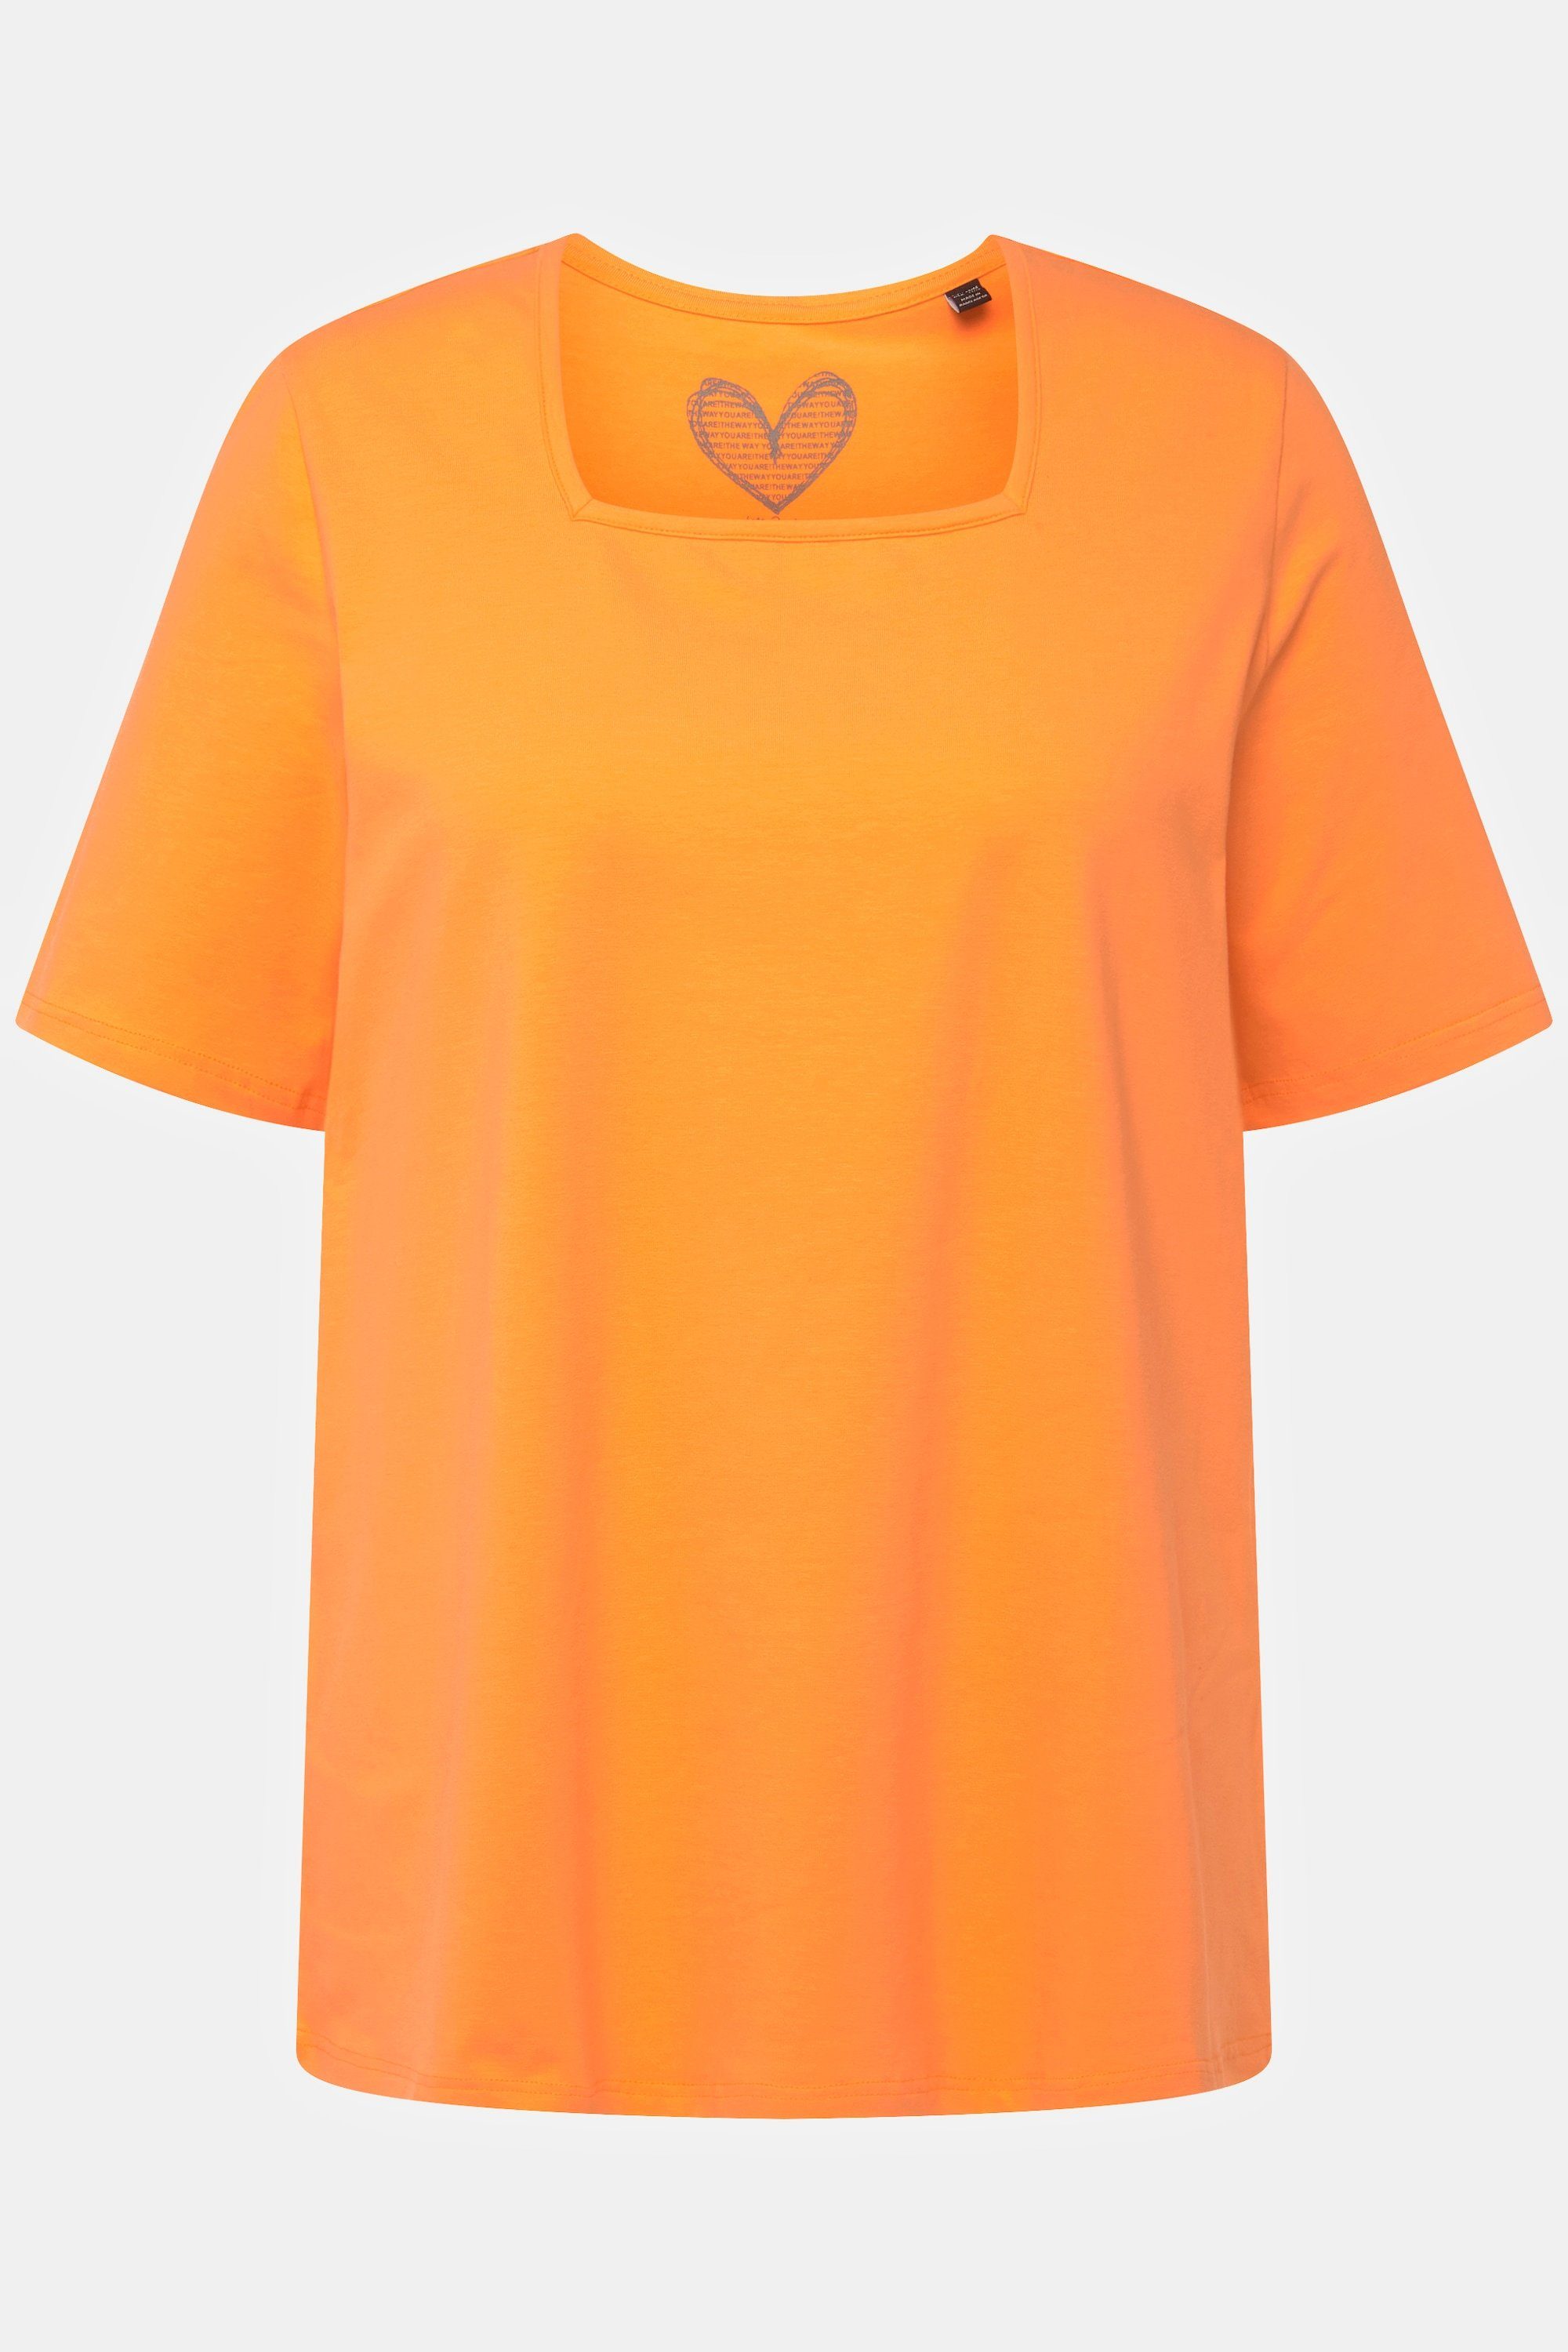 Ulla Popken Rundhalsshirt T-Shirt Halbarm Carree-Ausschnitt cantaloupe A-Linie orange